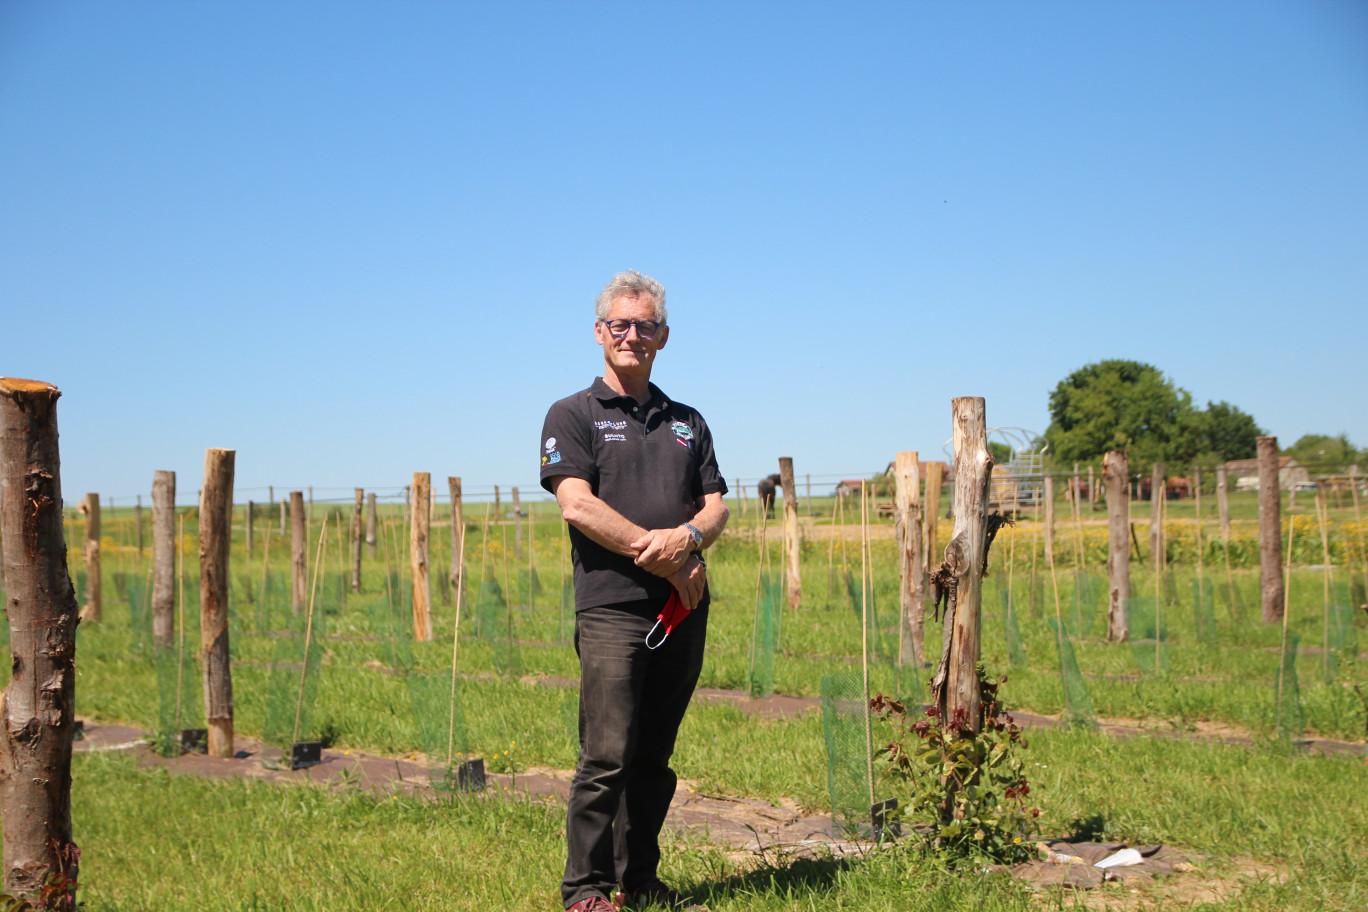 Yannick Jubault pose devant les rangs de vigne, au bout desquels a été planté un rosier. (c) Aletheia Press/ Benoit Delabre)